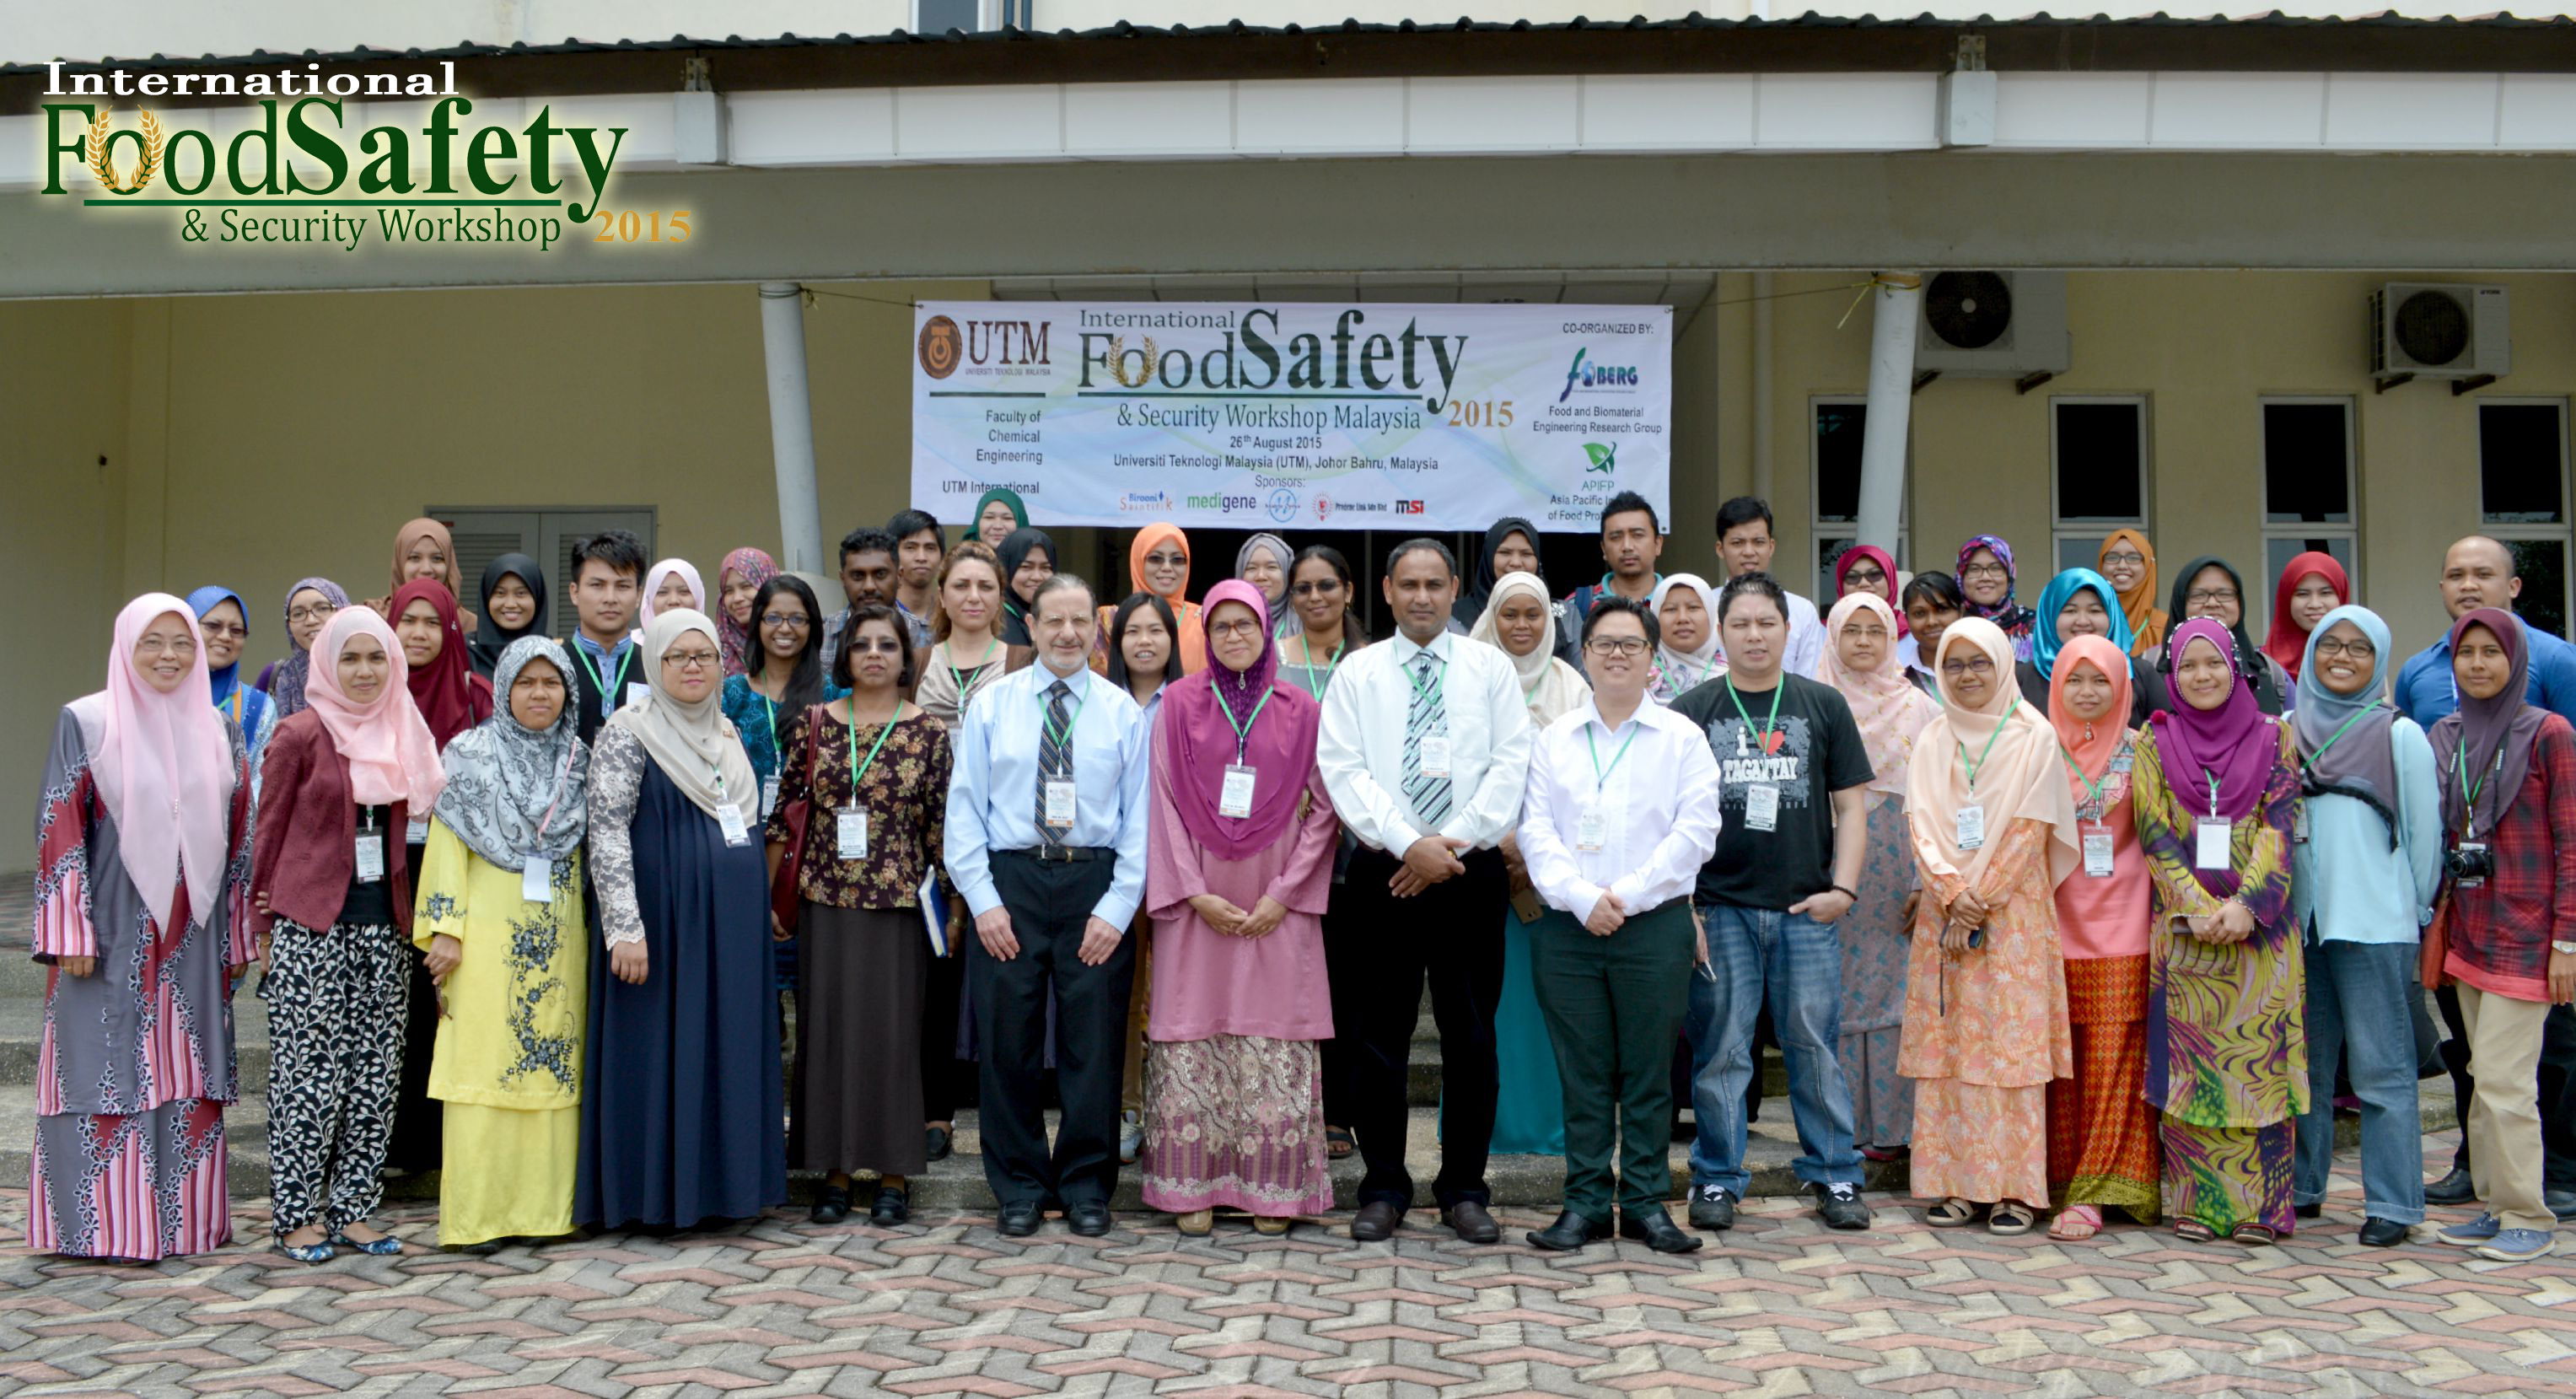 International Food Safety & Security Workshop is back !!!